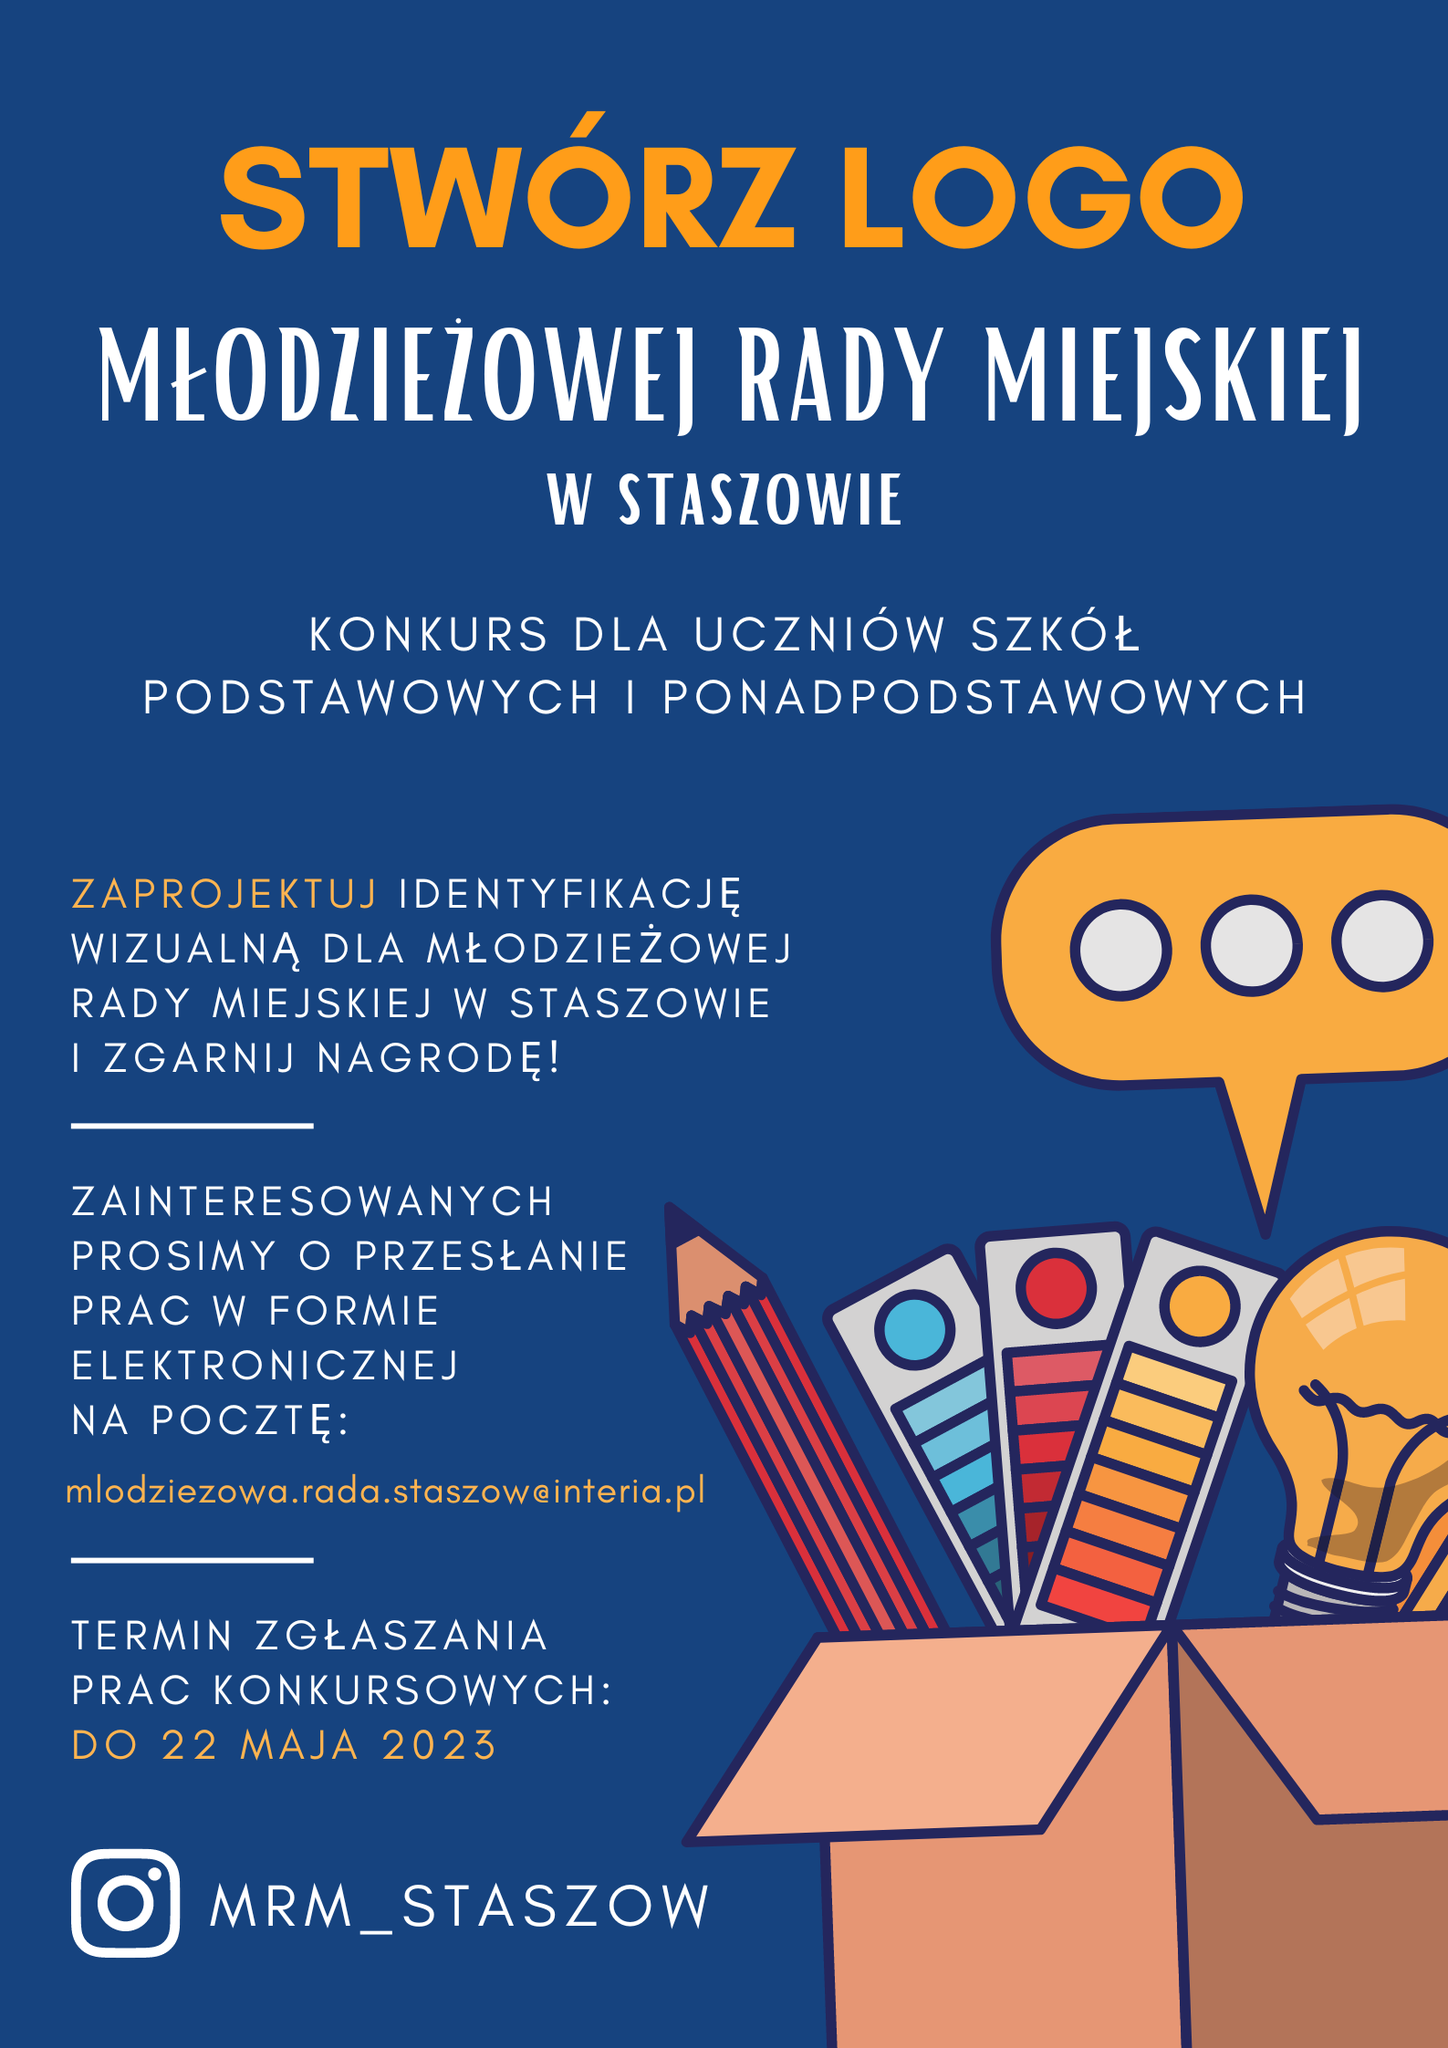 Zaprojektuj identyfikację dla Młodzieżowej Rady Miejskiej w Staszowie i zgarnij nagrodę. Zainteresowanych prosimy o przesłanie prac w formie elektronicznej na pocztę: mlodziezowa.rada.staszow@interia.pl.